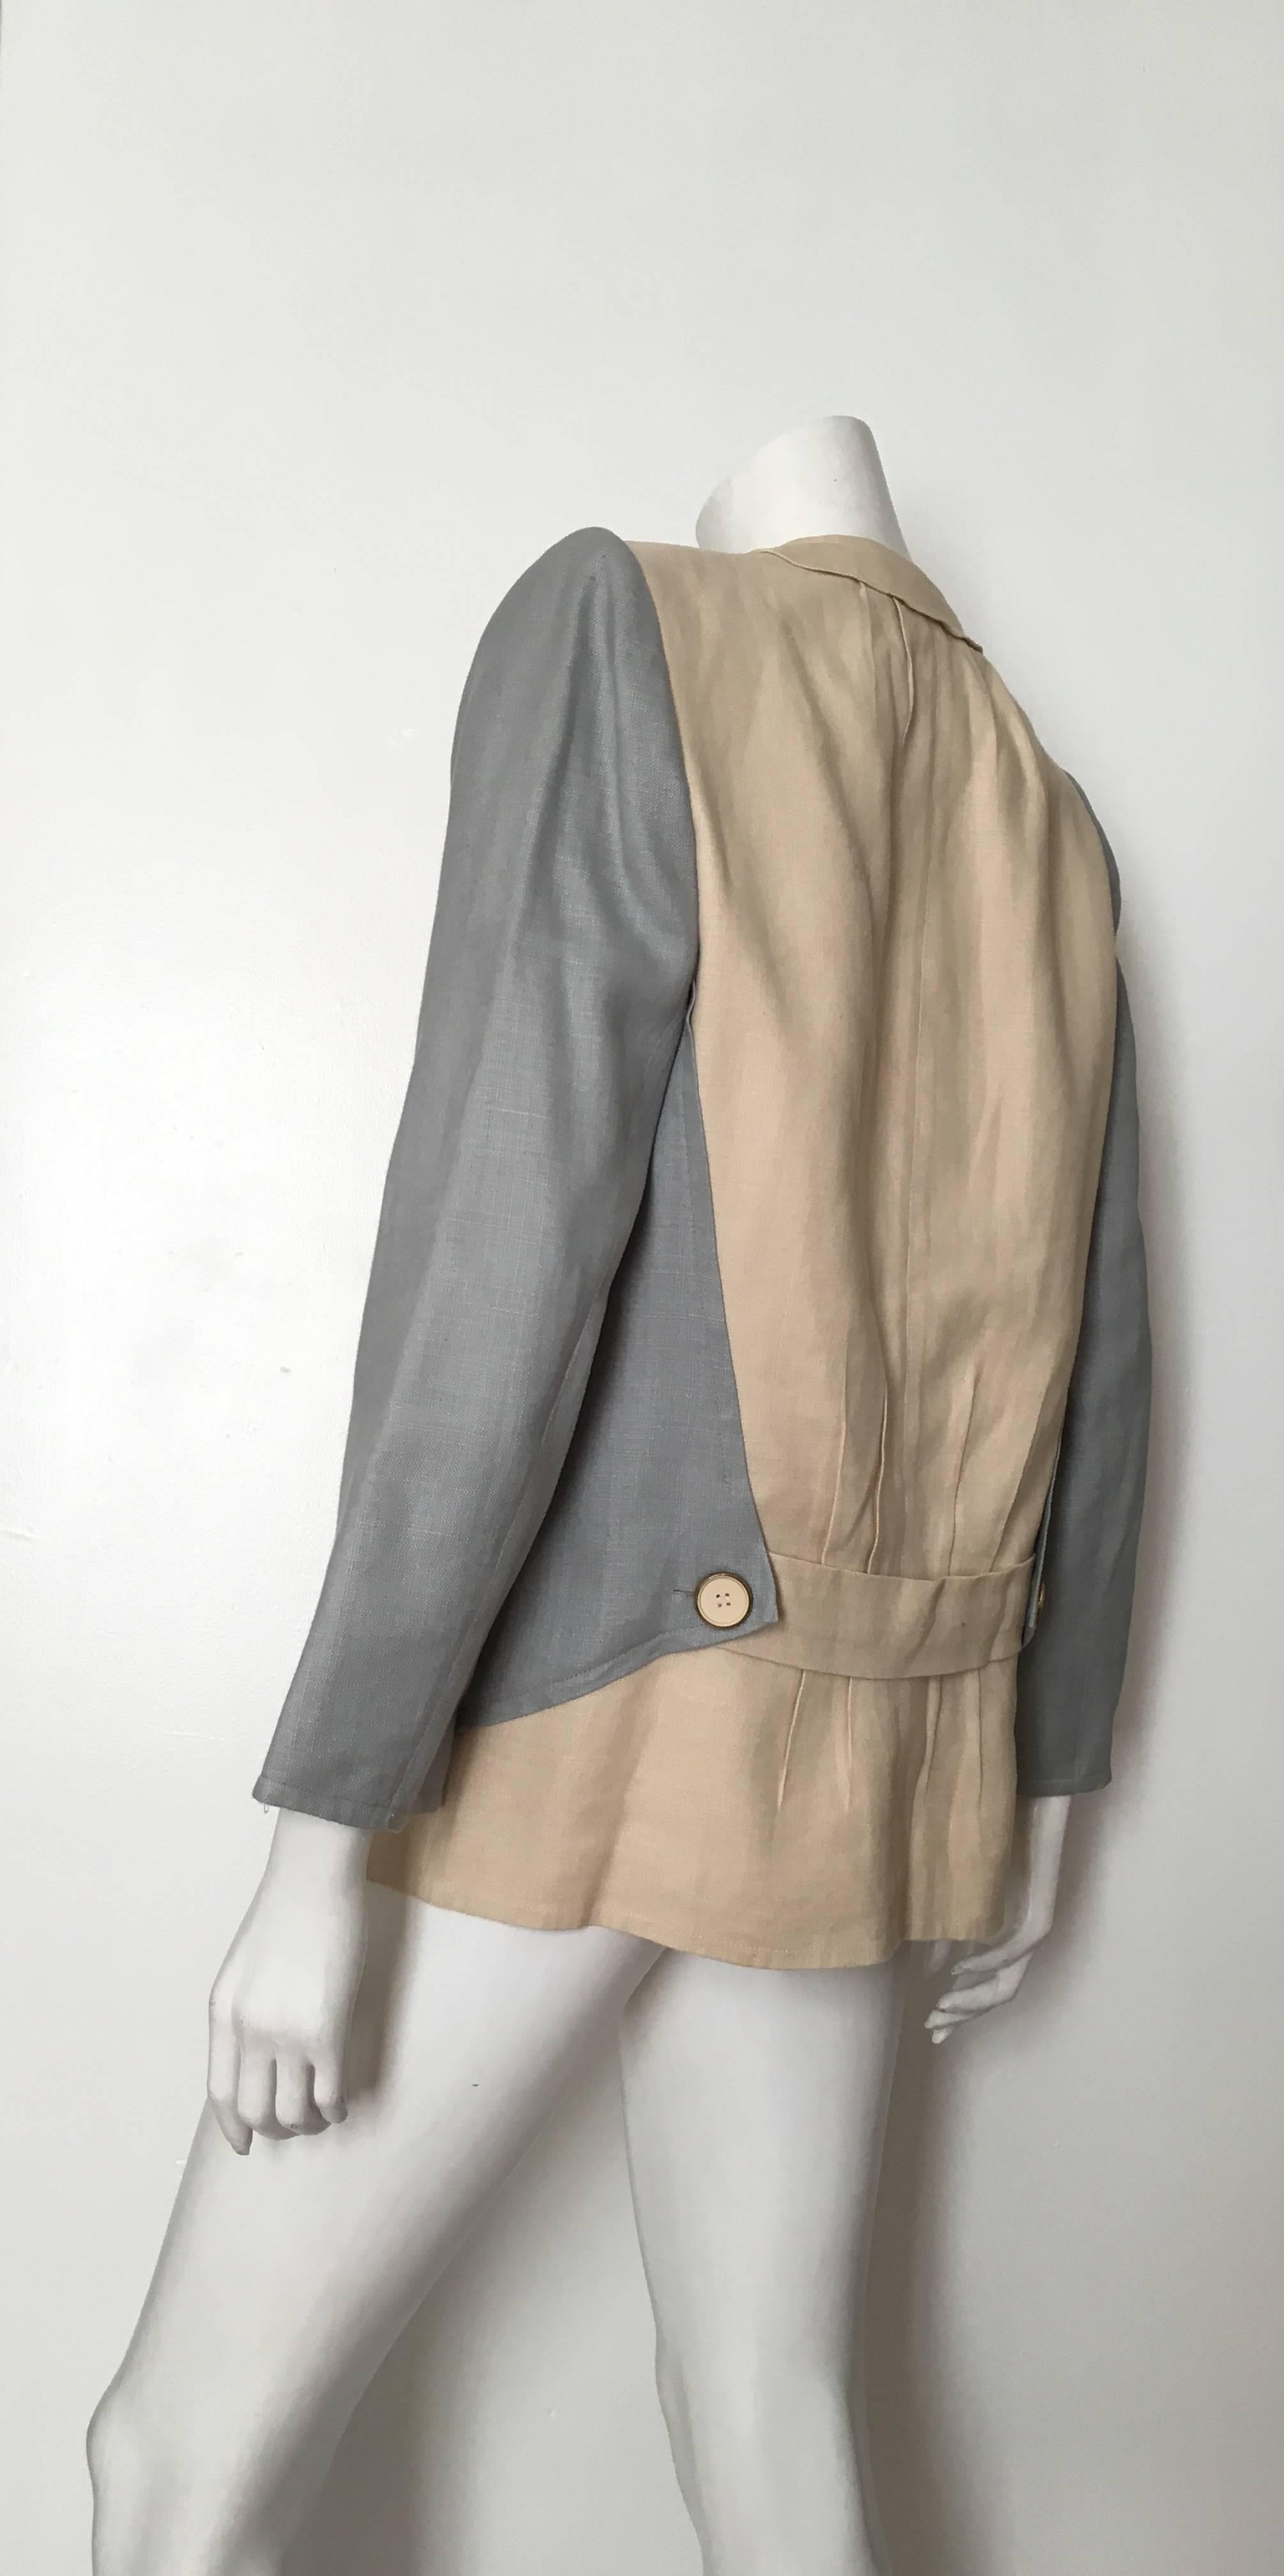 Jacqueline de Ribes for Saks Fifth Avenue 1980s Linen Jacket Size 8 / 10. For Sale 1